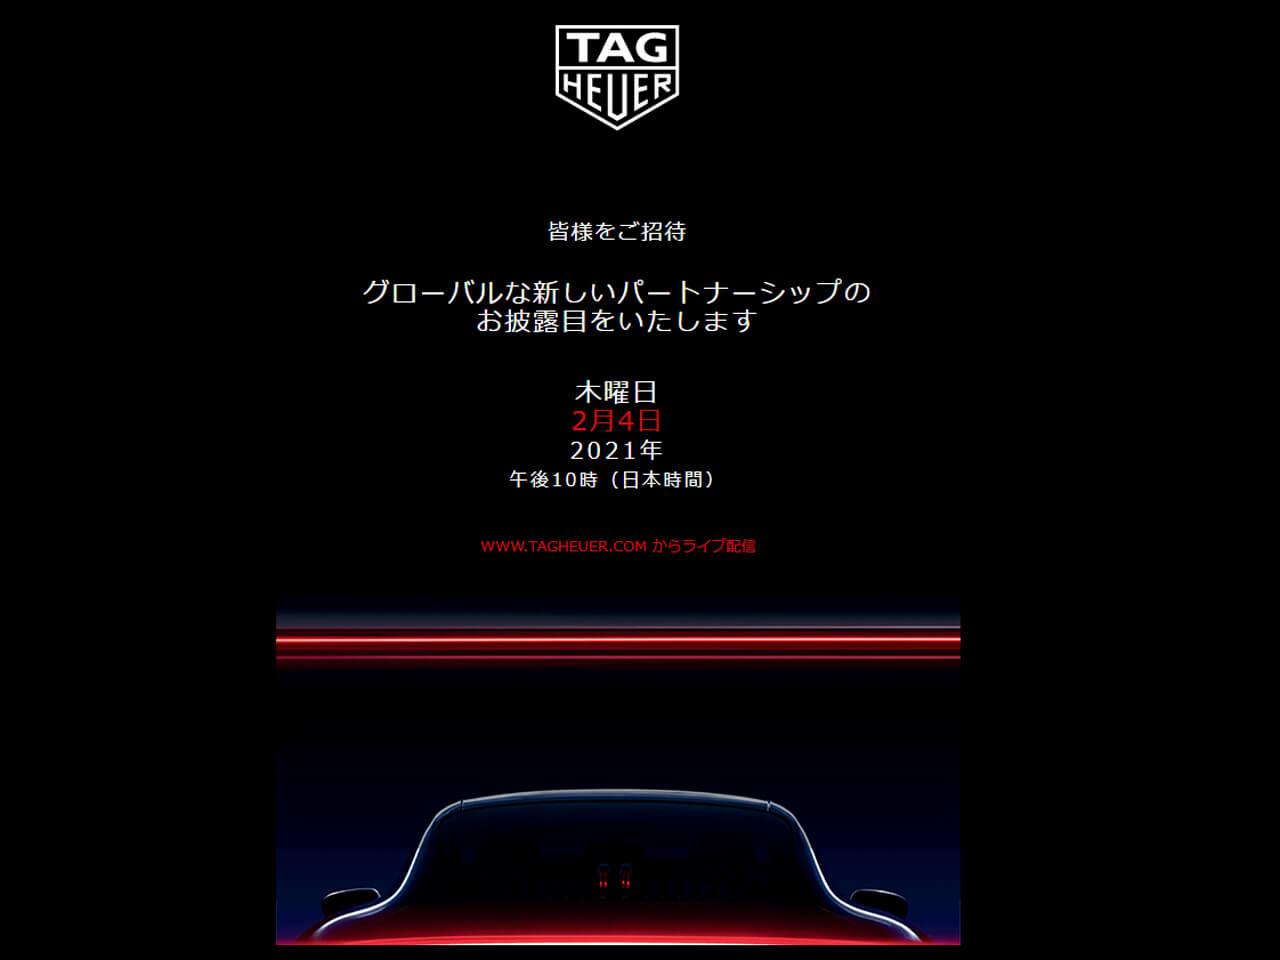 スイスの高級時計ブランド タグ・ホイヤーと、ドイツのスポーツカーメーカー ポルシェが、2/4(木) 日本時間22時にバーチャルイベントにて新たなパートナーシップを発表